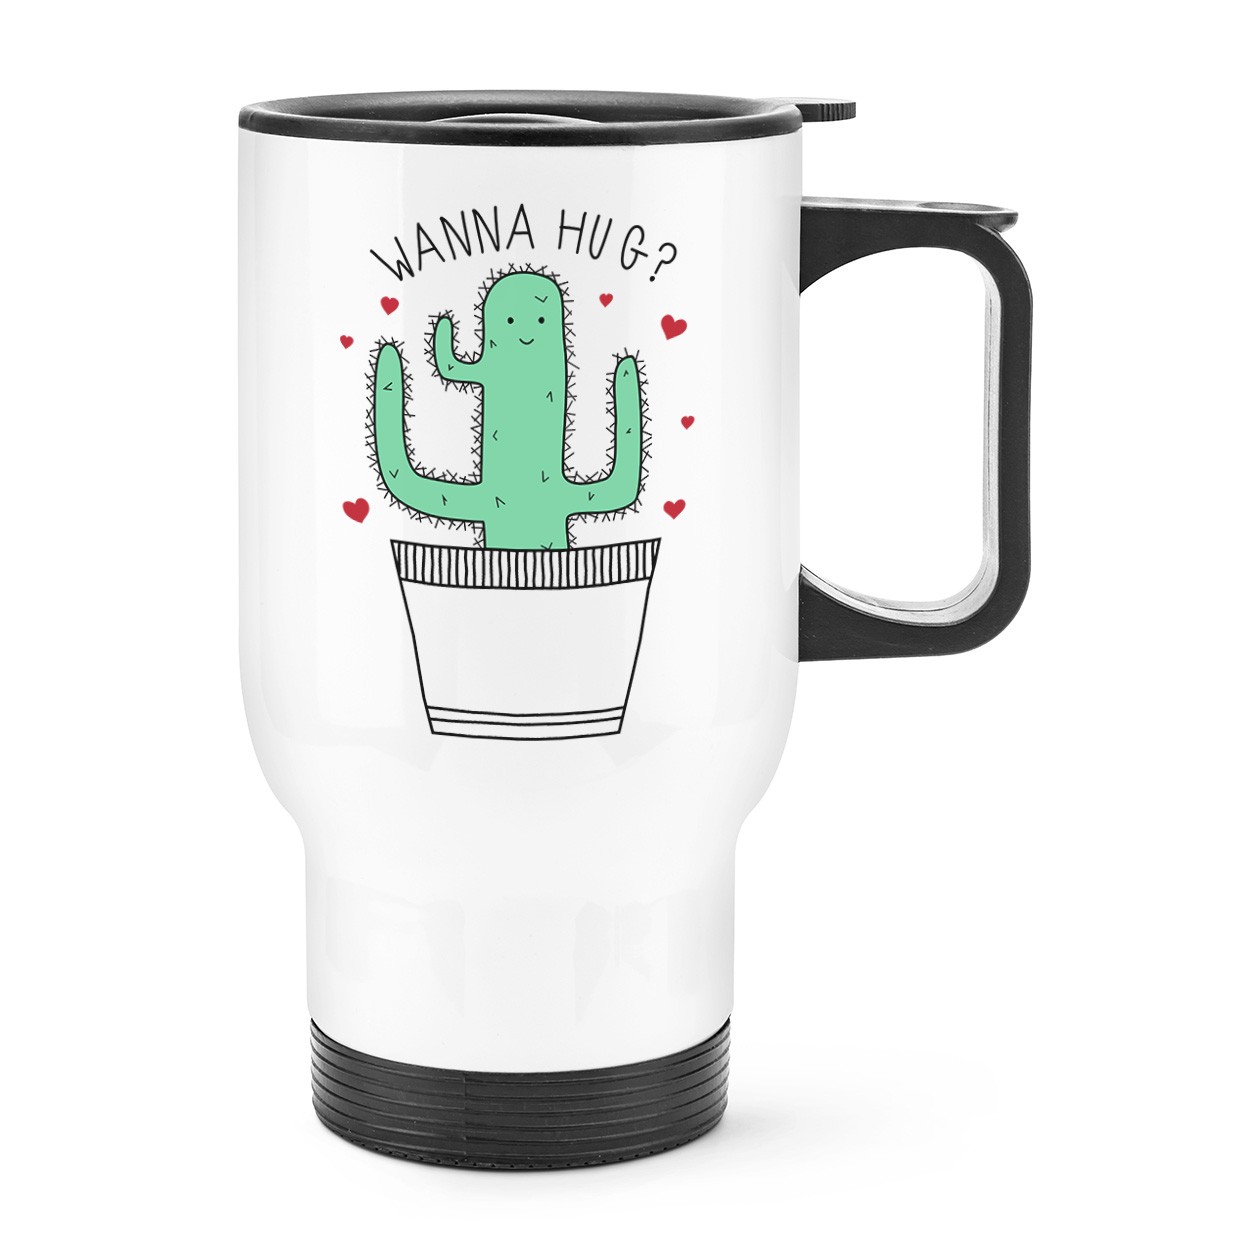 Cactus Wanna Hug Travel Mug Cup With Handle